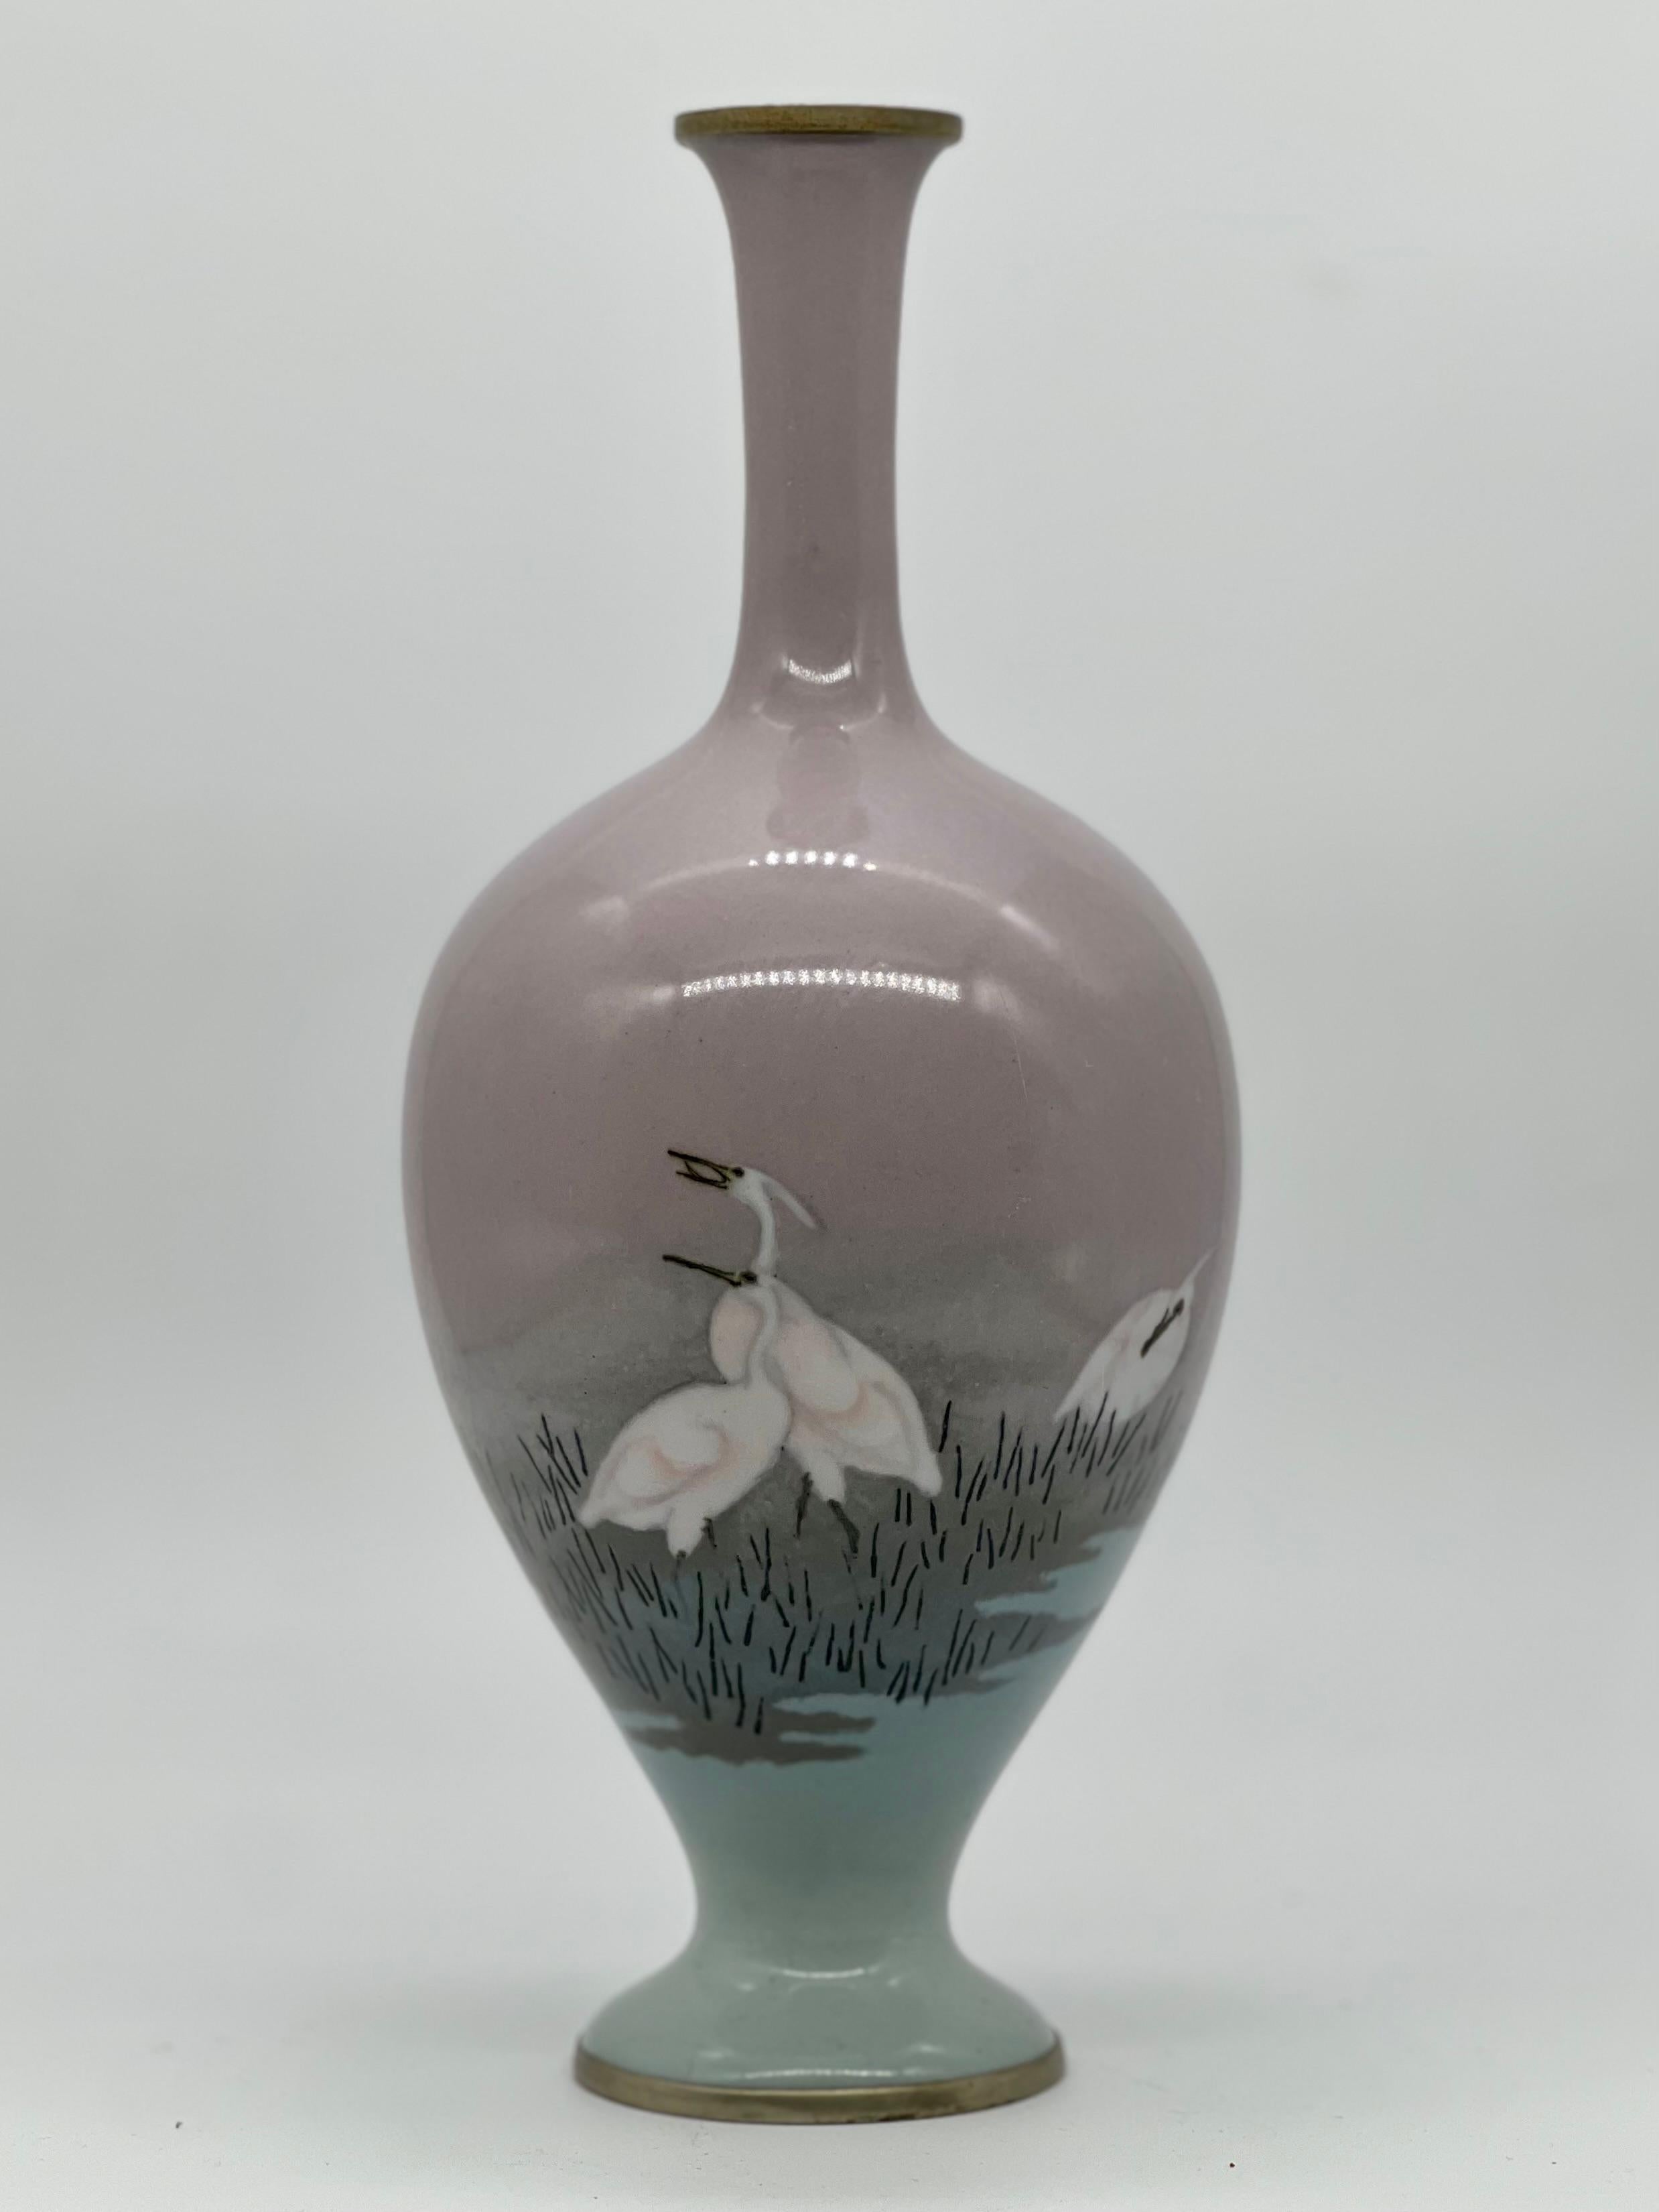 Un magnifique vase balustre en émail cloisonné et musen attribué à Namikawa Sosuke.
Époque Meiji (1868-1912), fin du XIXe siècle.

Ce vase présente une forme classique élégante avec un col mince et une bouche évasée au-dessus d'un corps balustre.